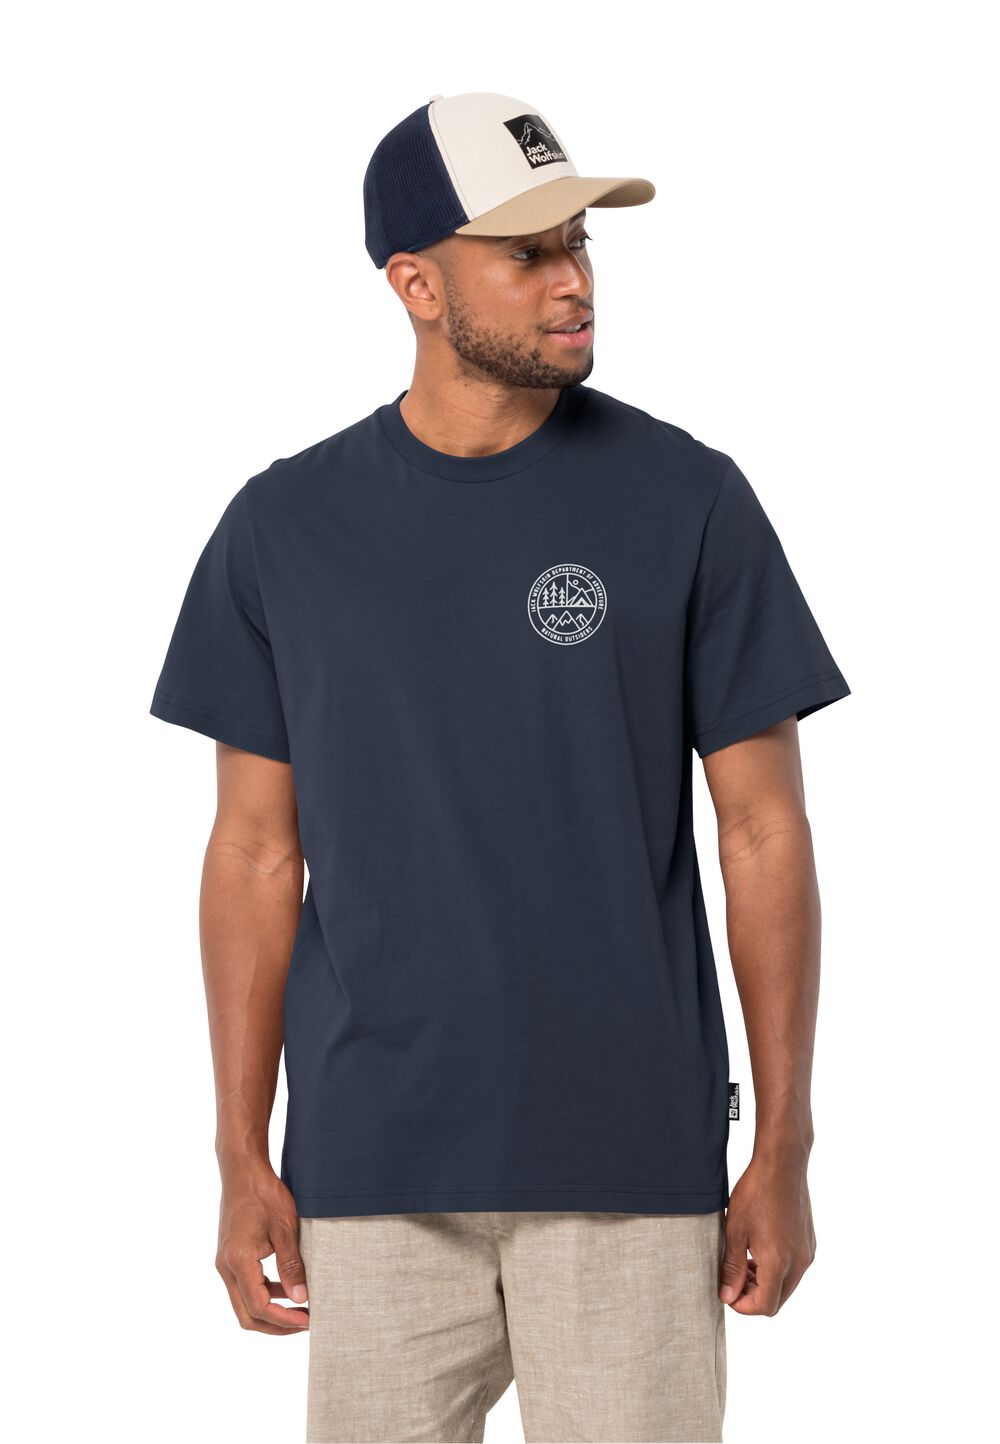 Jack Wolfskin Herren T-shirt aus Bio-Baumwolle Campfire T-Shirt Men XXL blau night blue von Jack Wolfskin